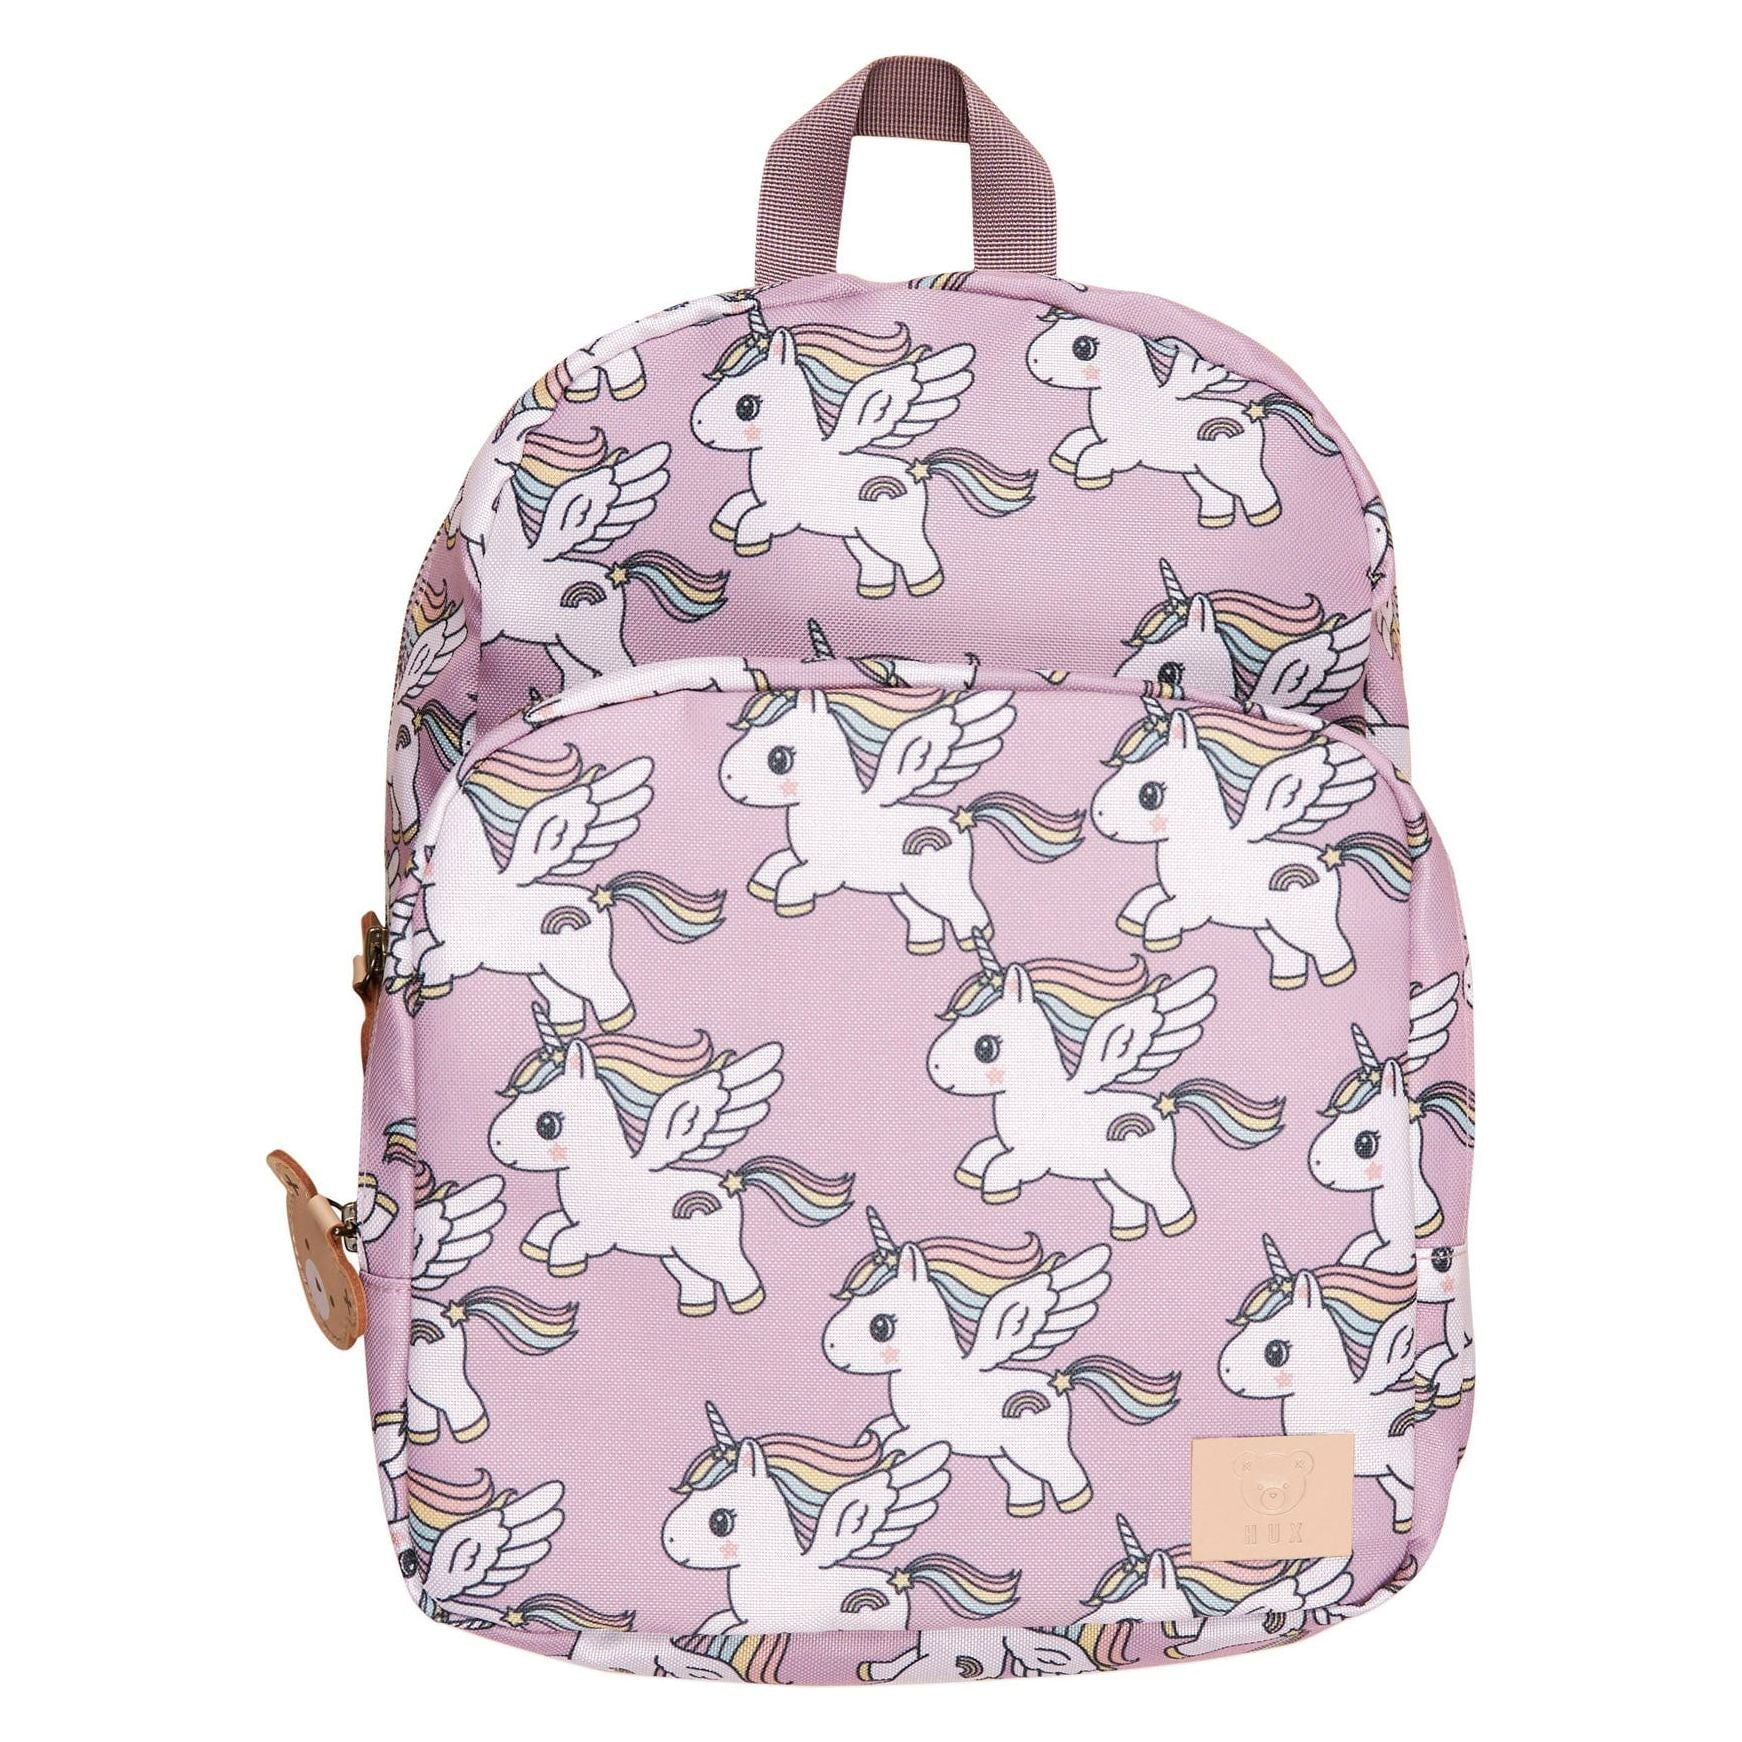 Magical Unicorn Backpack